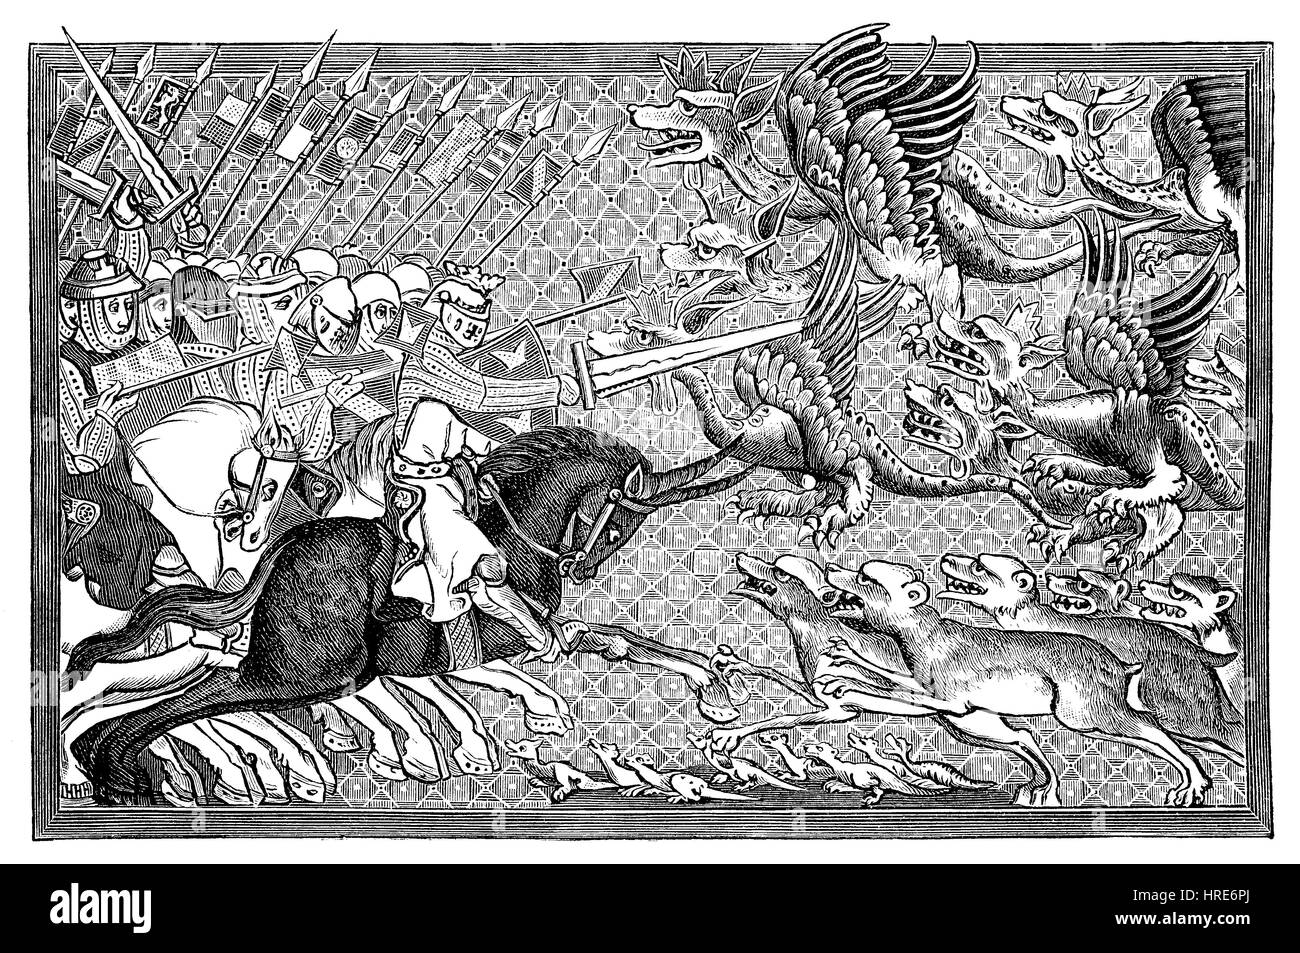 Alexander en la batalla con dragones y otras bestias fantásticas, miniaturas en un manuscrito de la Pfaffen Lambrecht desde el siglo 13, Bruselas, Bélgica, Alejandro Magno, reproducción de una xilografía del siglo xix, 1885 Foto de stock